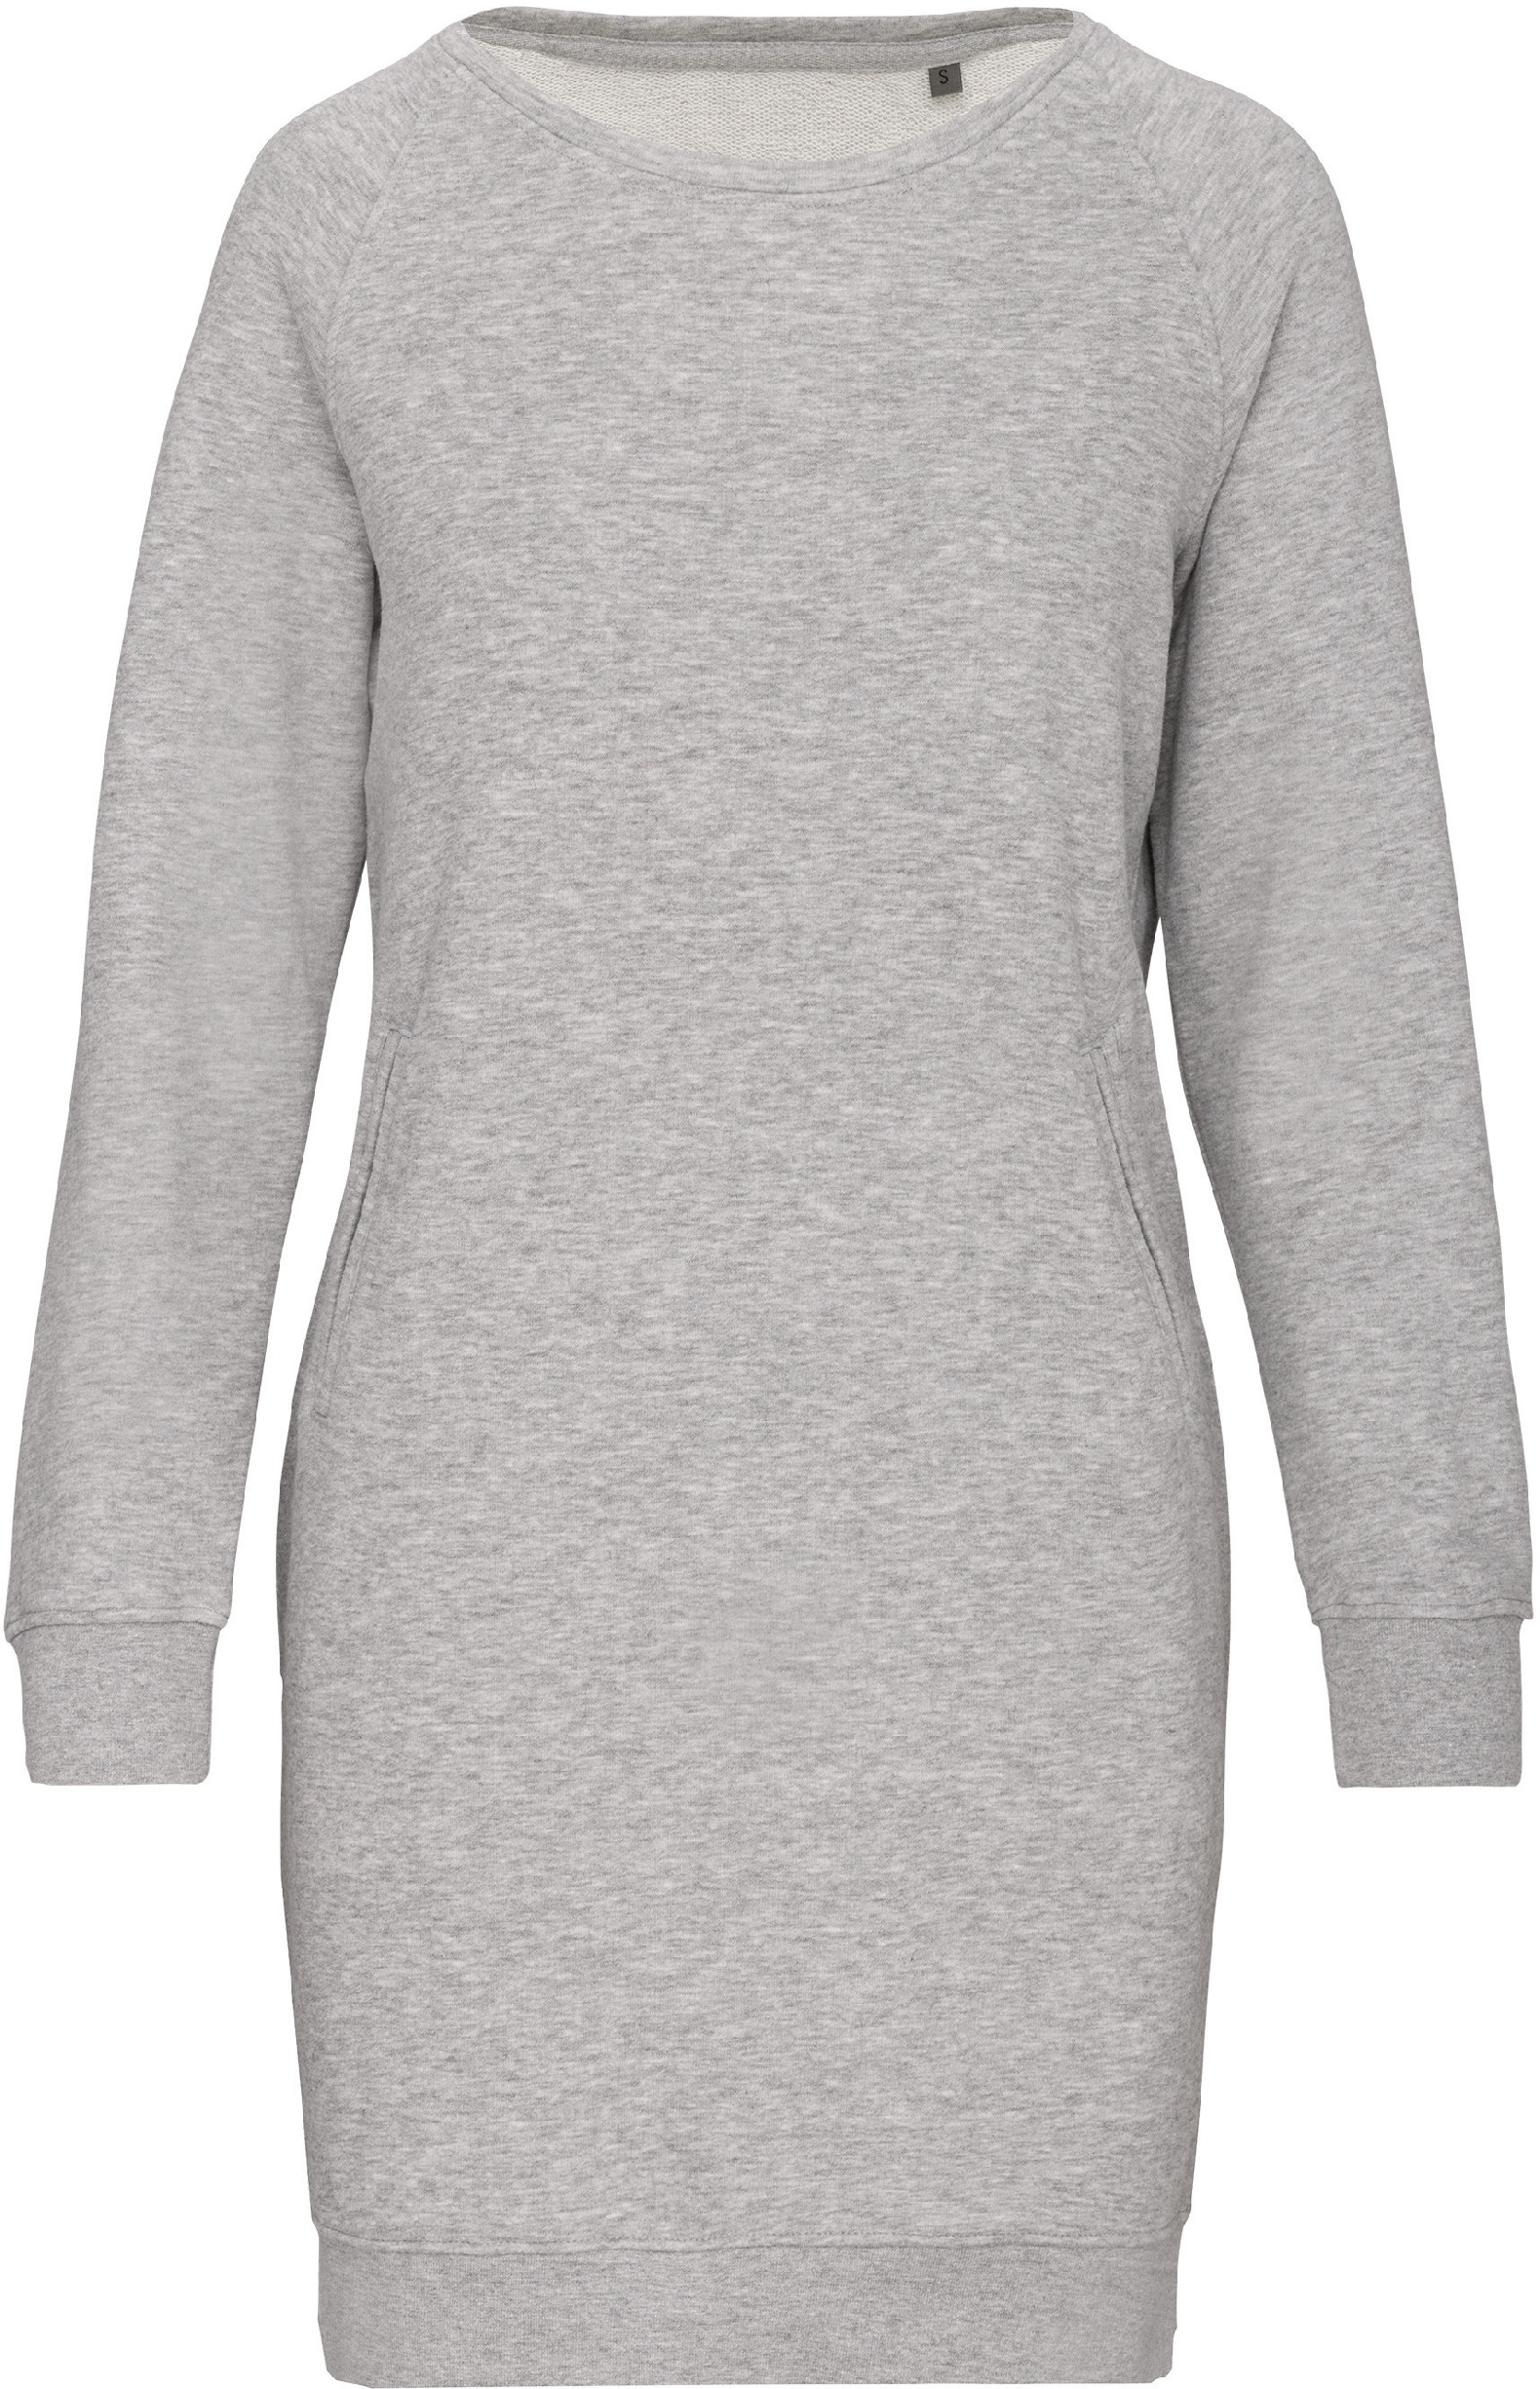 Organické teplákové šaty Barva: Light Grey Heather, Velikost: M